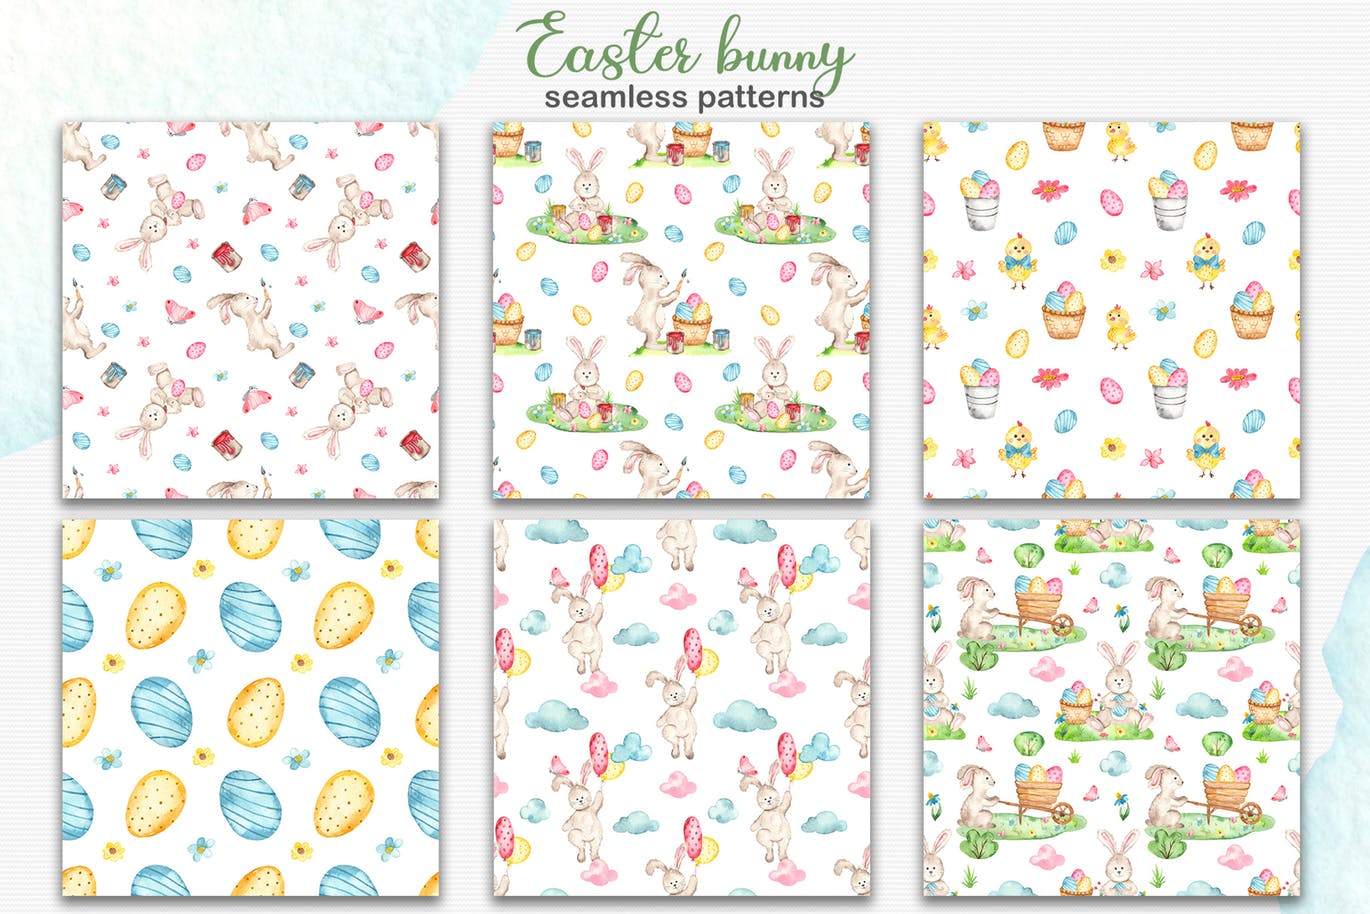 复活节兔子水彩手绘素材套装 Watercolor Easter Bunny collection插图(6)